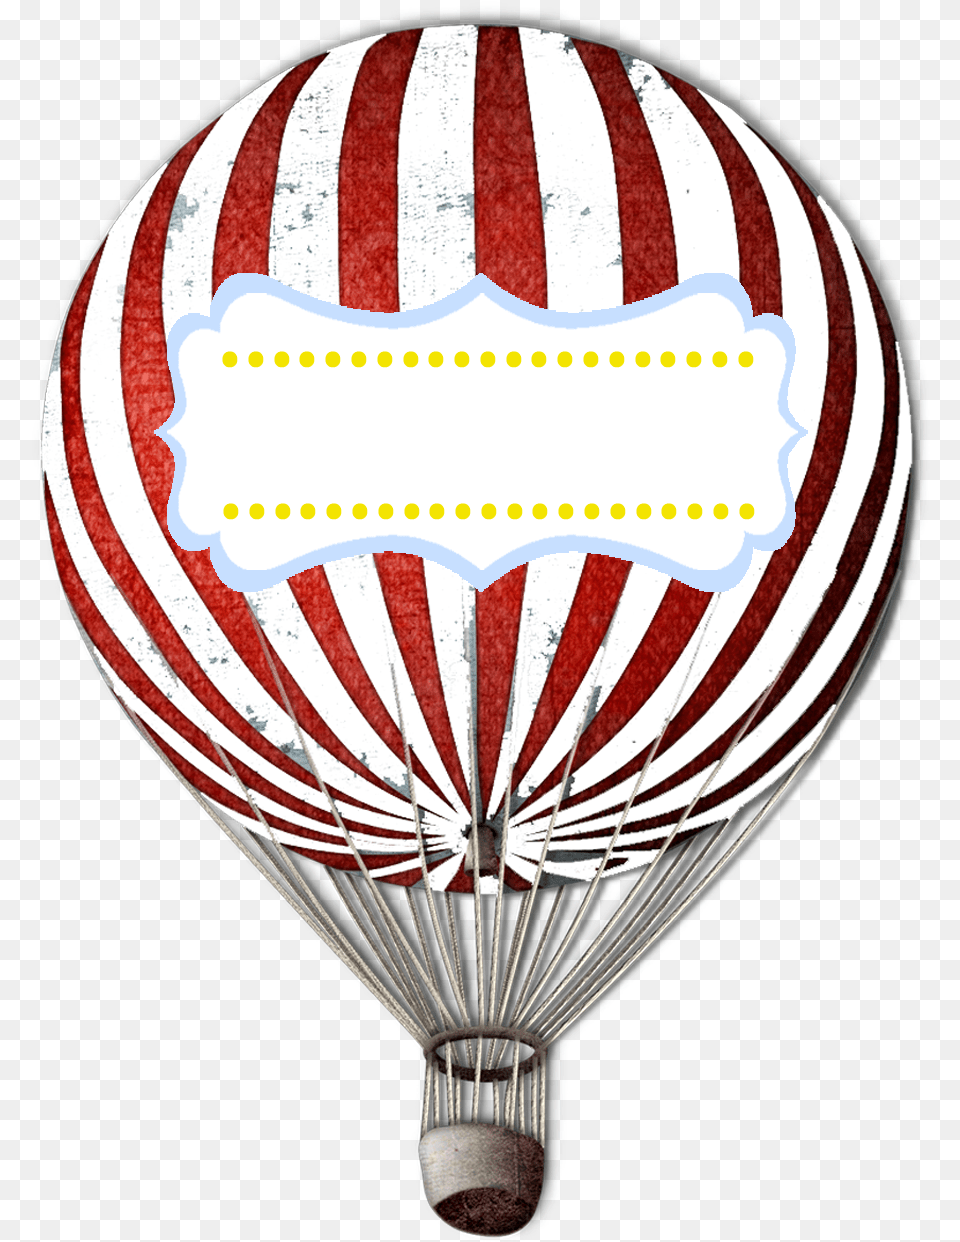 Hot Air Balloon Vintage, Aircraft, Hot Air Balloon, Transportation, Vehicle Free Transparent Png